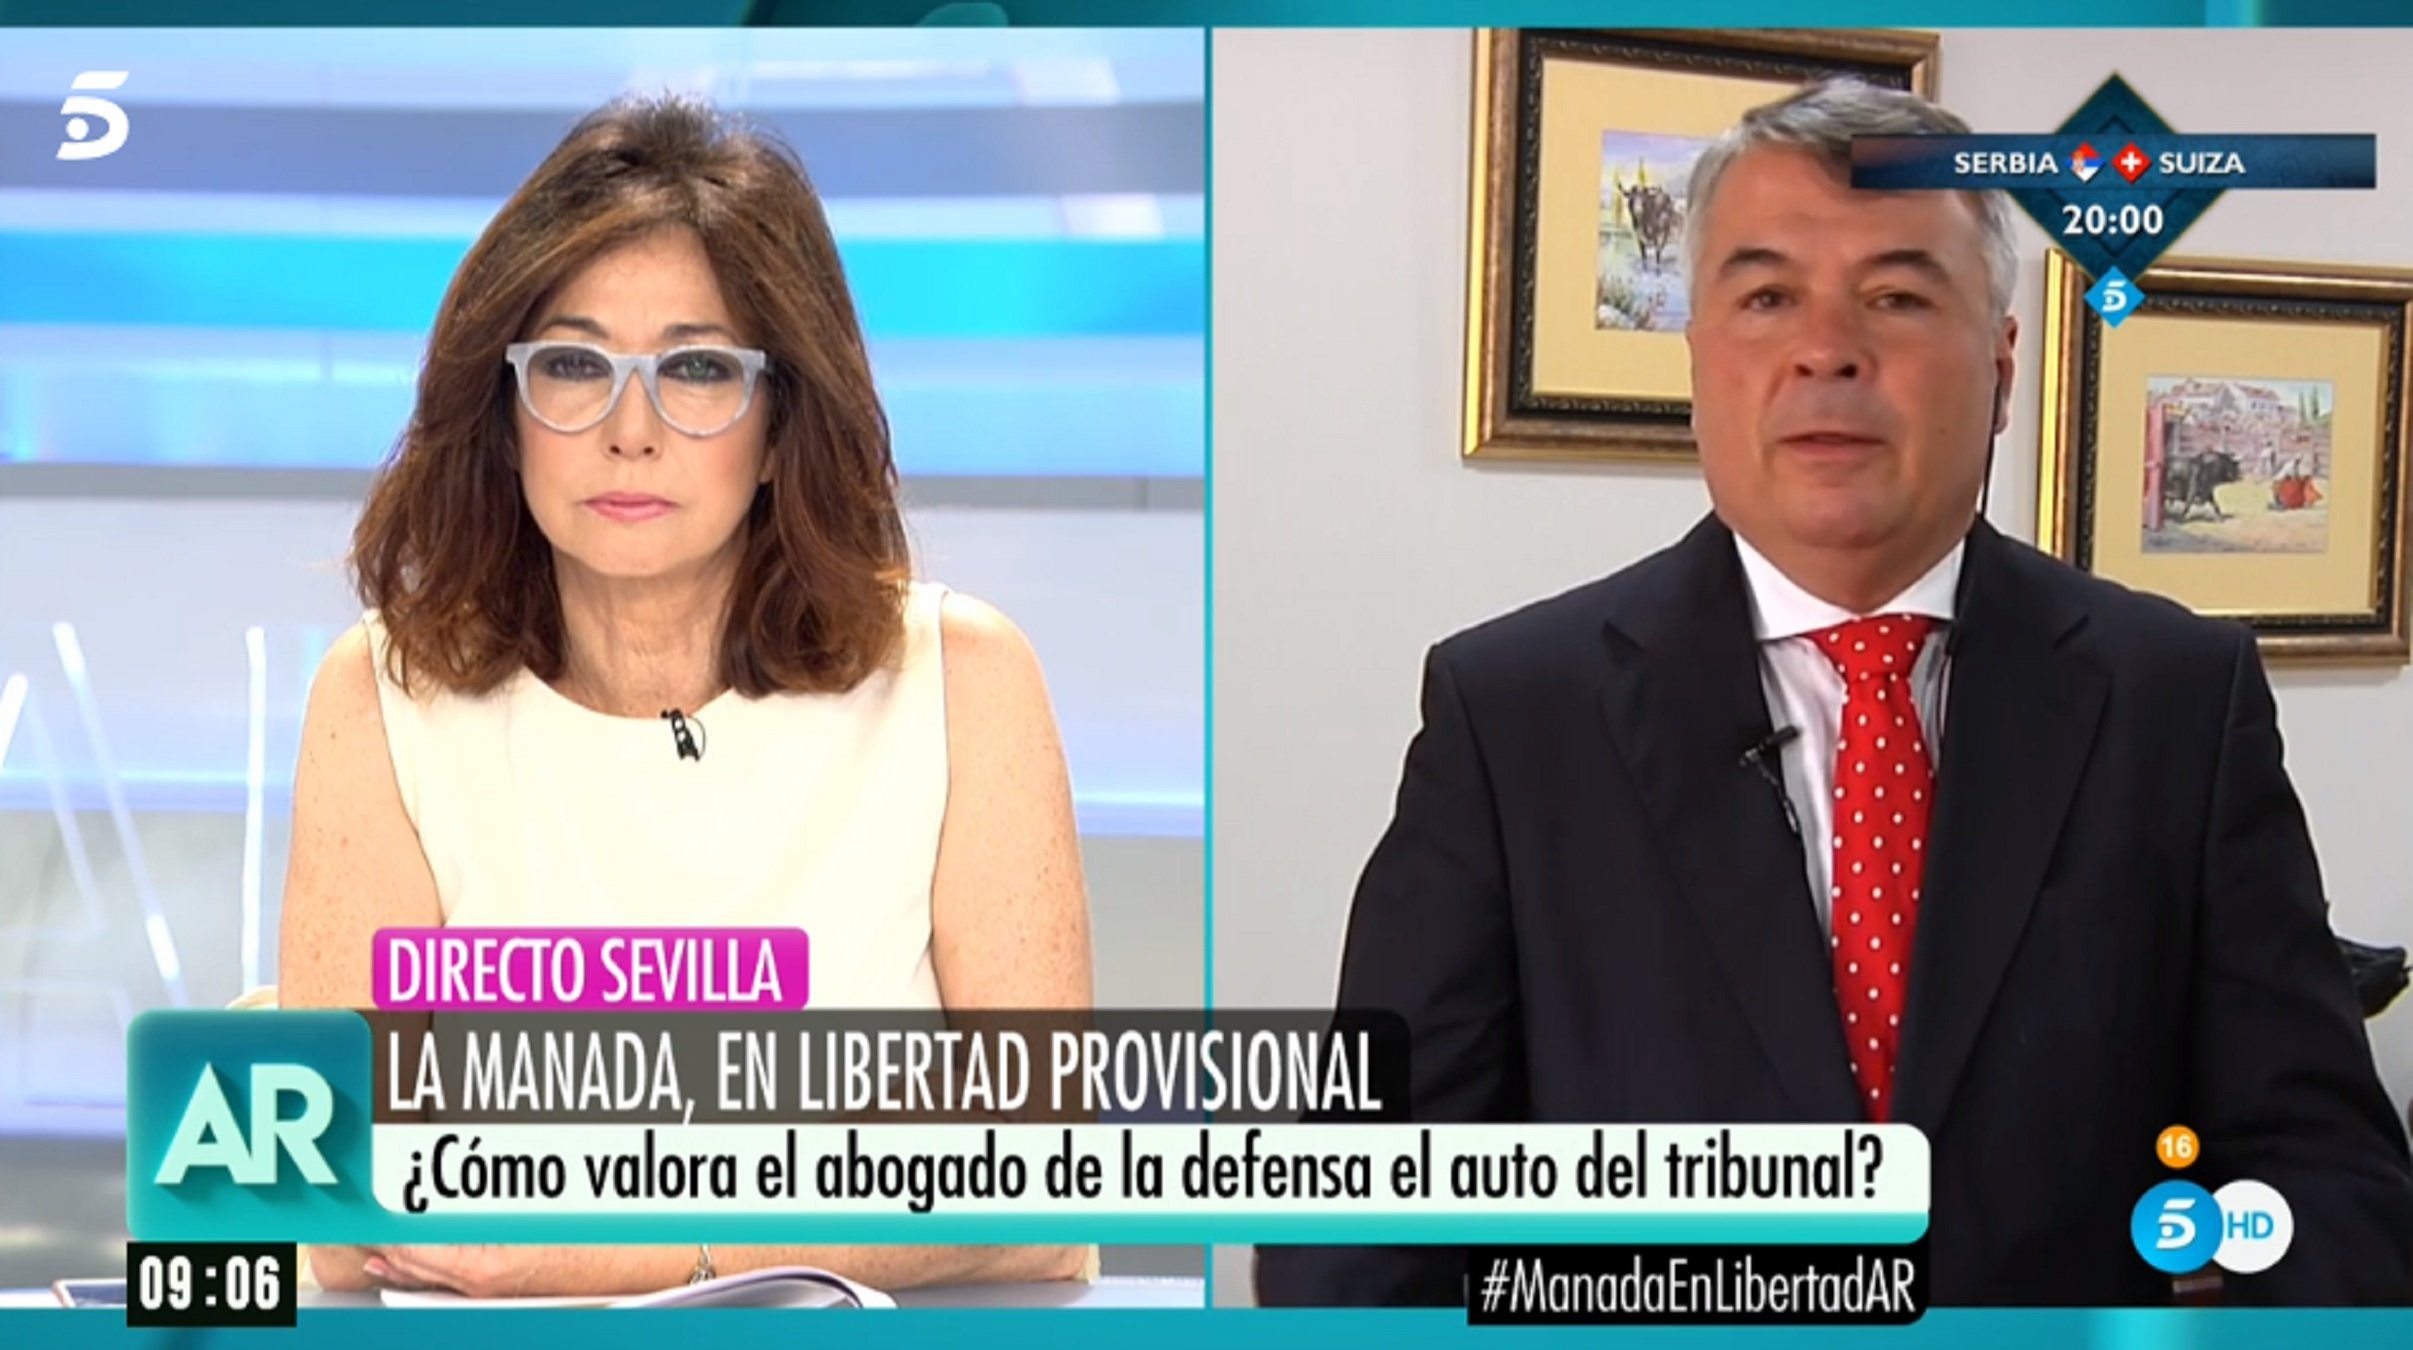 Ana Rosa s'enfronta en directe a l'advocat de La Manada: "No et passis"